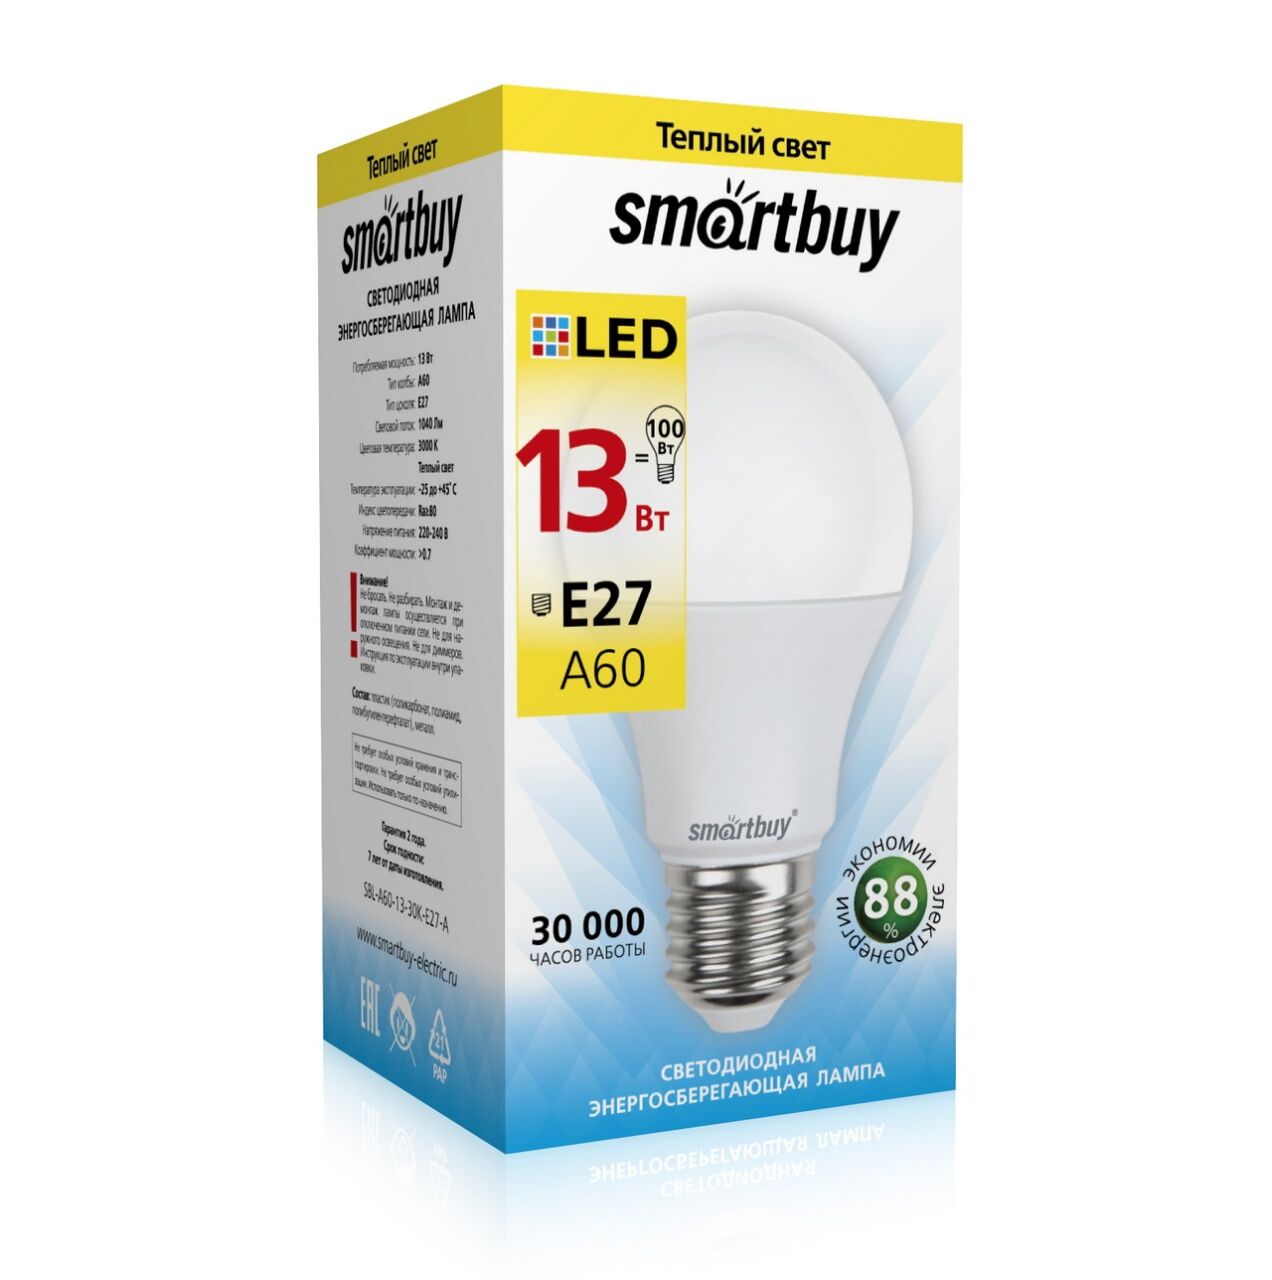 Лампа cветодиодная "Smartbuy", A60, E27, 13 Вт, 3000